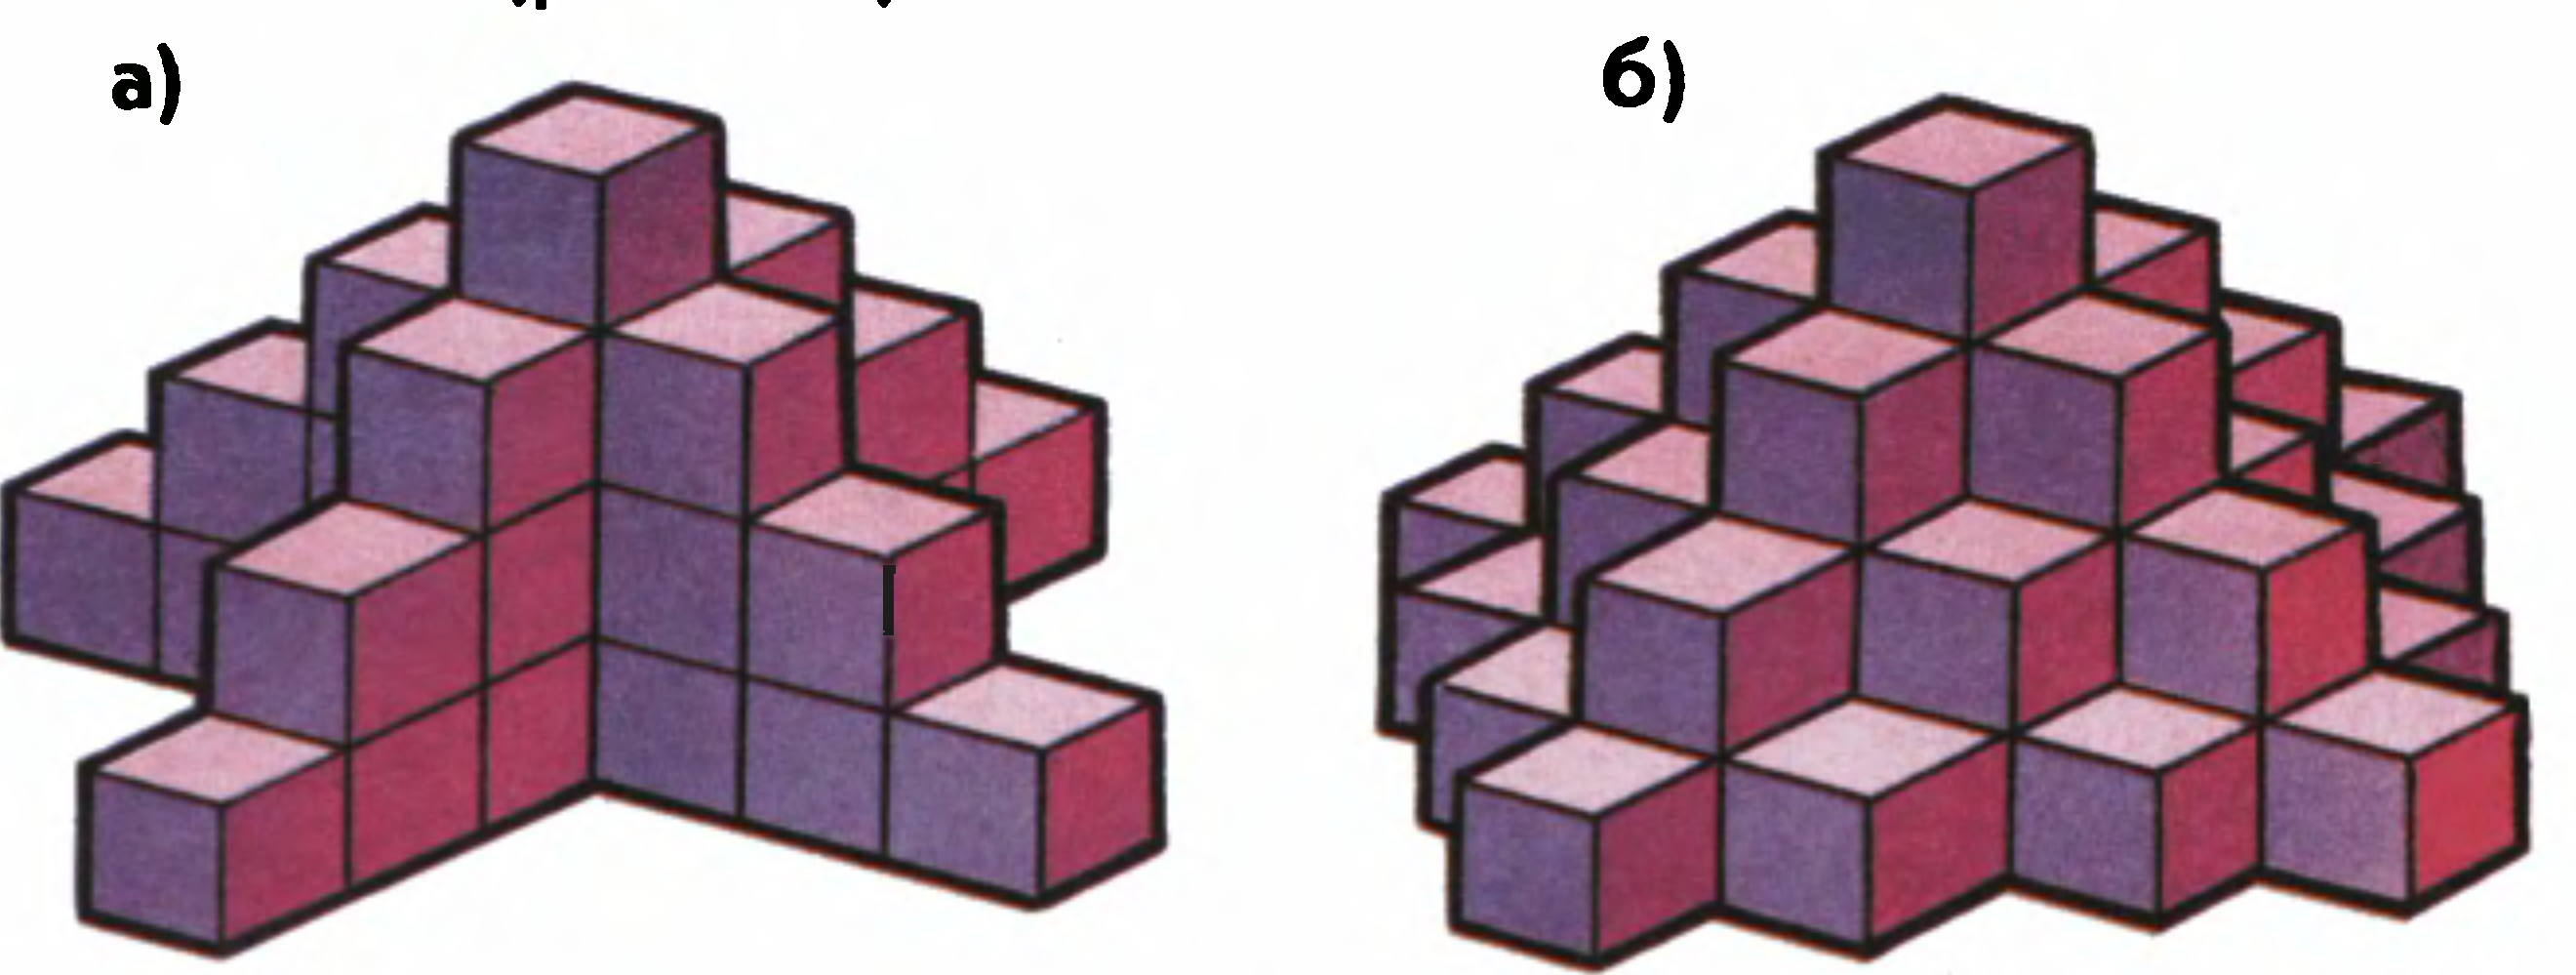 Сложные фигуры из кубиков